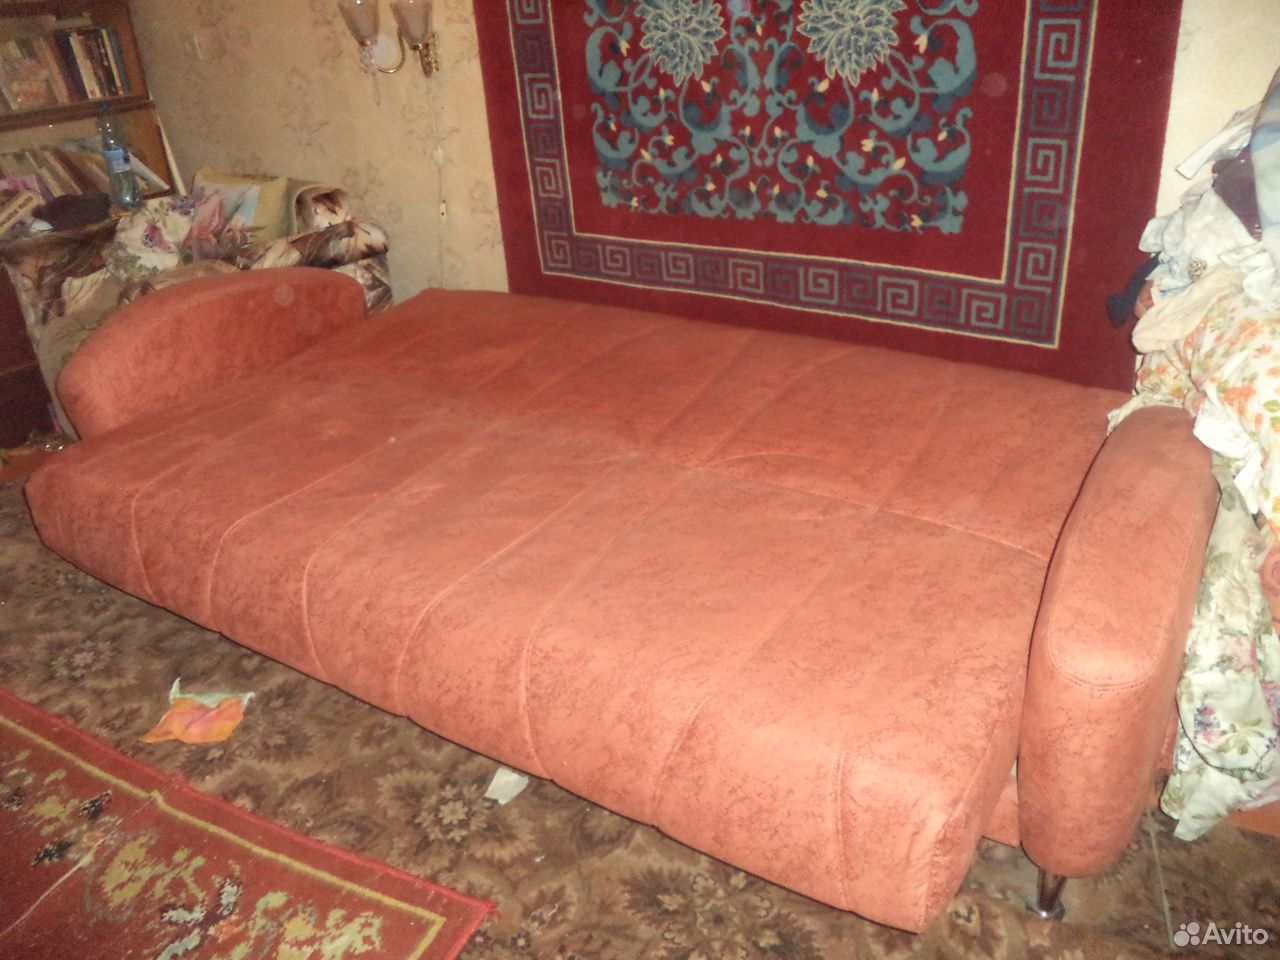  Диван (диван- кровать) новый  89675090961 купить 2